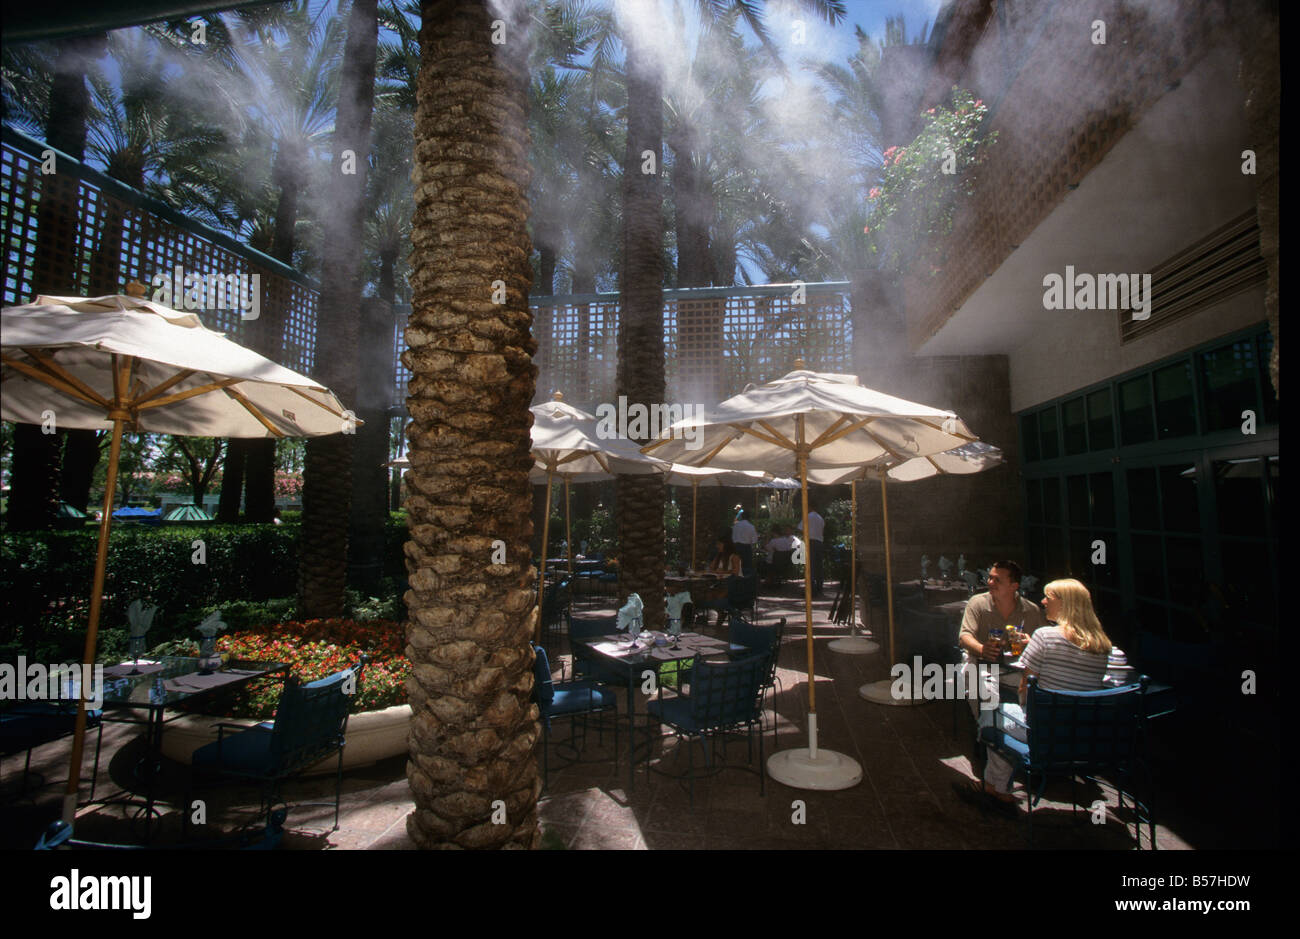 Göttes Spritzwasser einen feinen Nebel aus Wasser Whch verdampft in der Hitze der Wüste zu kühlen die Luft rund um Restaurant-Kunden. USA Stockfoto